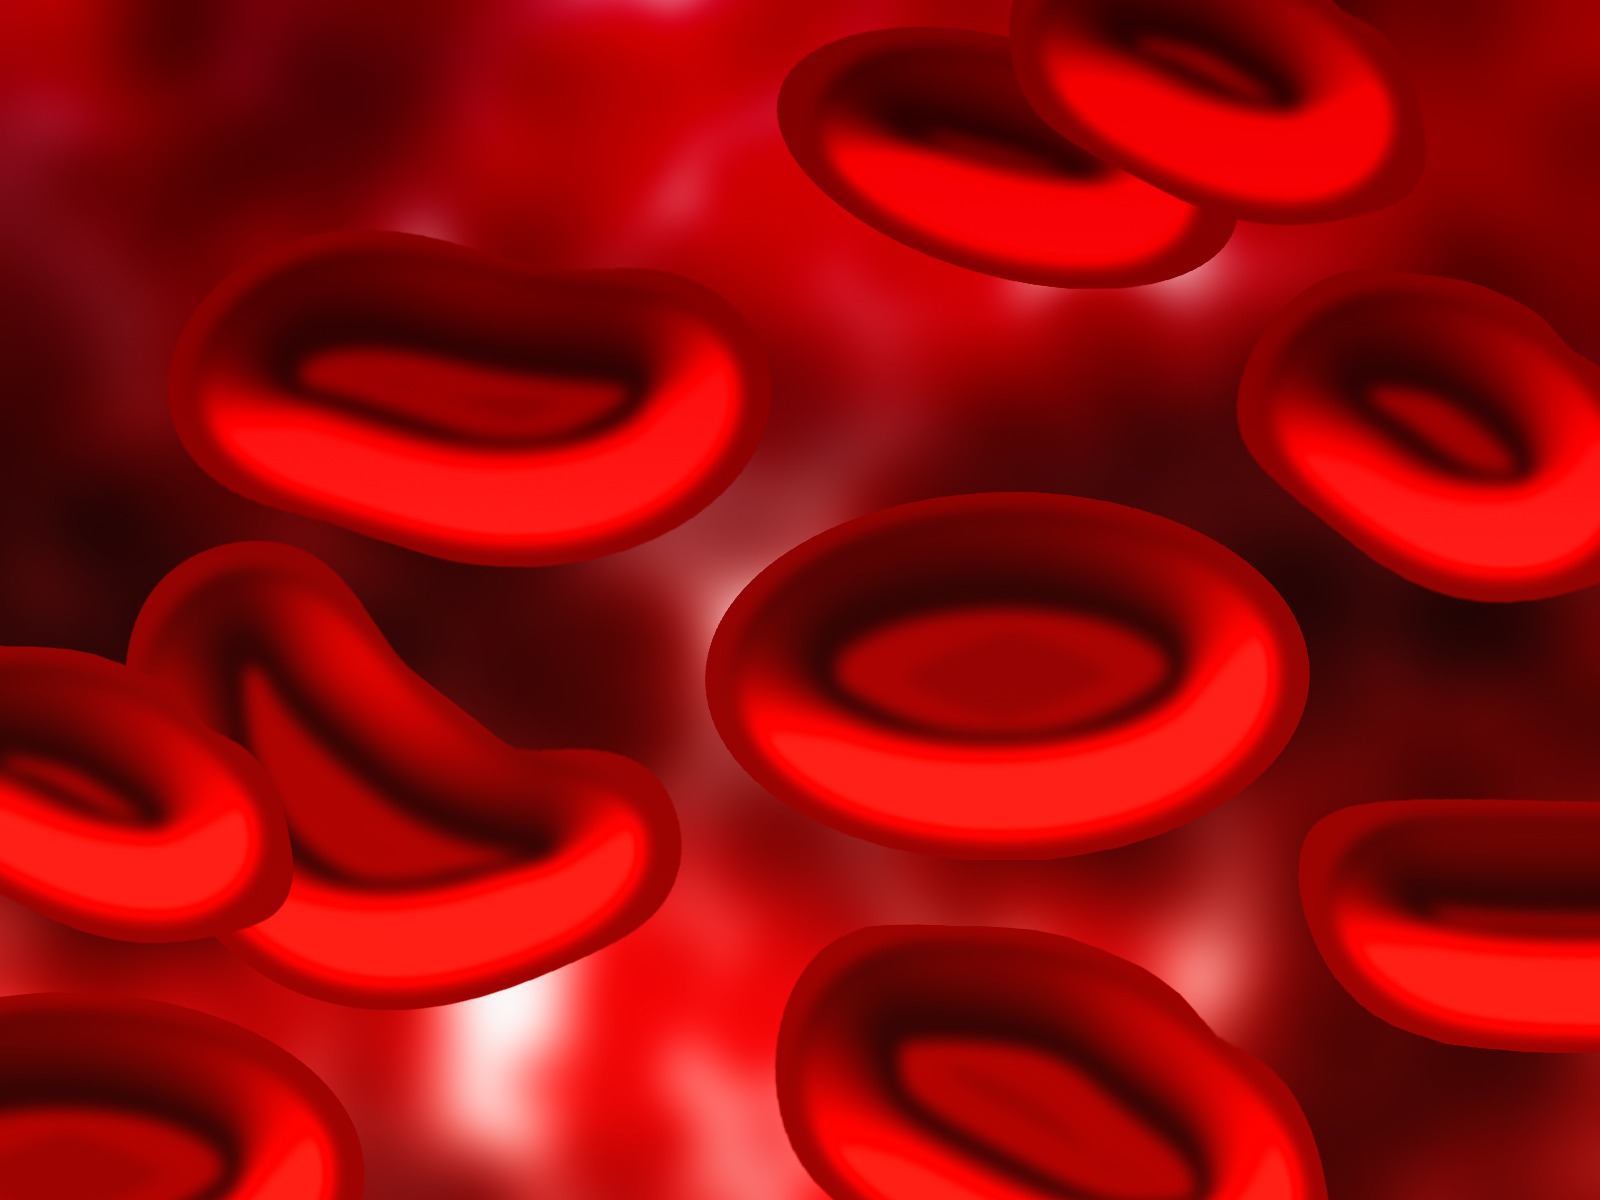 Les globules rouges ont une forme de disque&nbsp;biconcave (la zone centrale est plus fine que la périphérie). Ils sont très déformables, ce qui leur permet de passer dans des capillaires sanguins très fins, dont le diamètre est inférieur au leur.&nbsp;© geralt, Pixabay, DP